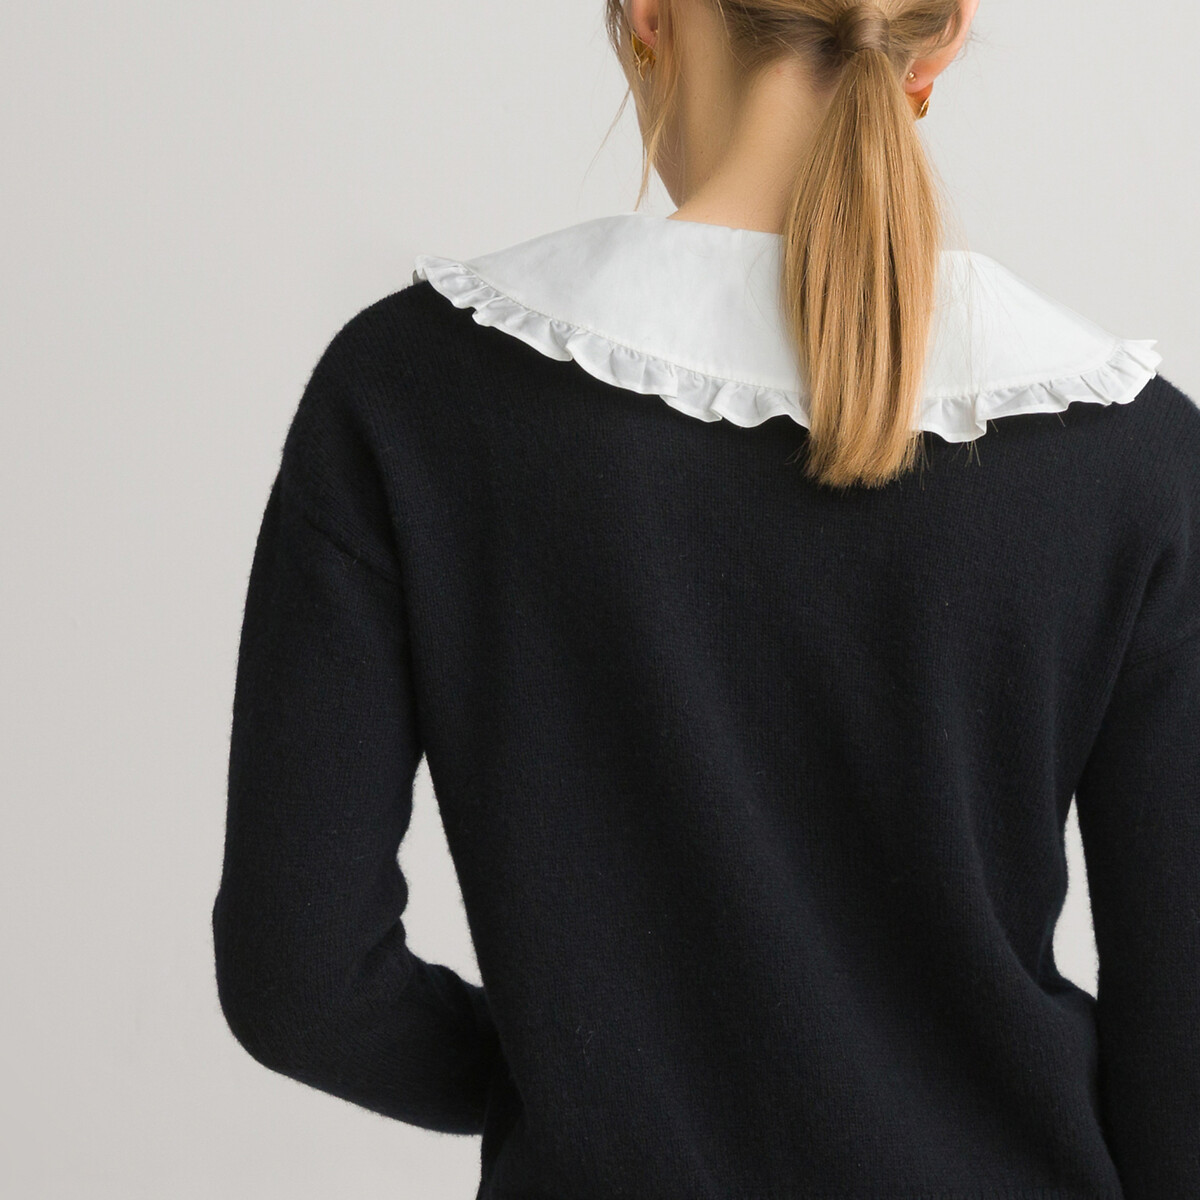 Пуловер LaRedoute 2 в 1 с отложным воротником длинными рукавами из шерсти L черный, размер L - фото 4